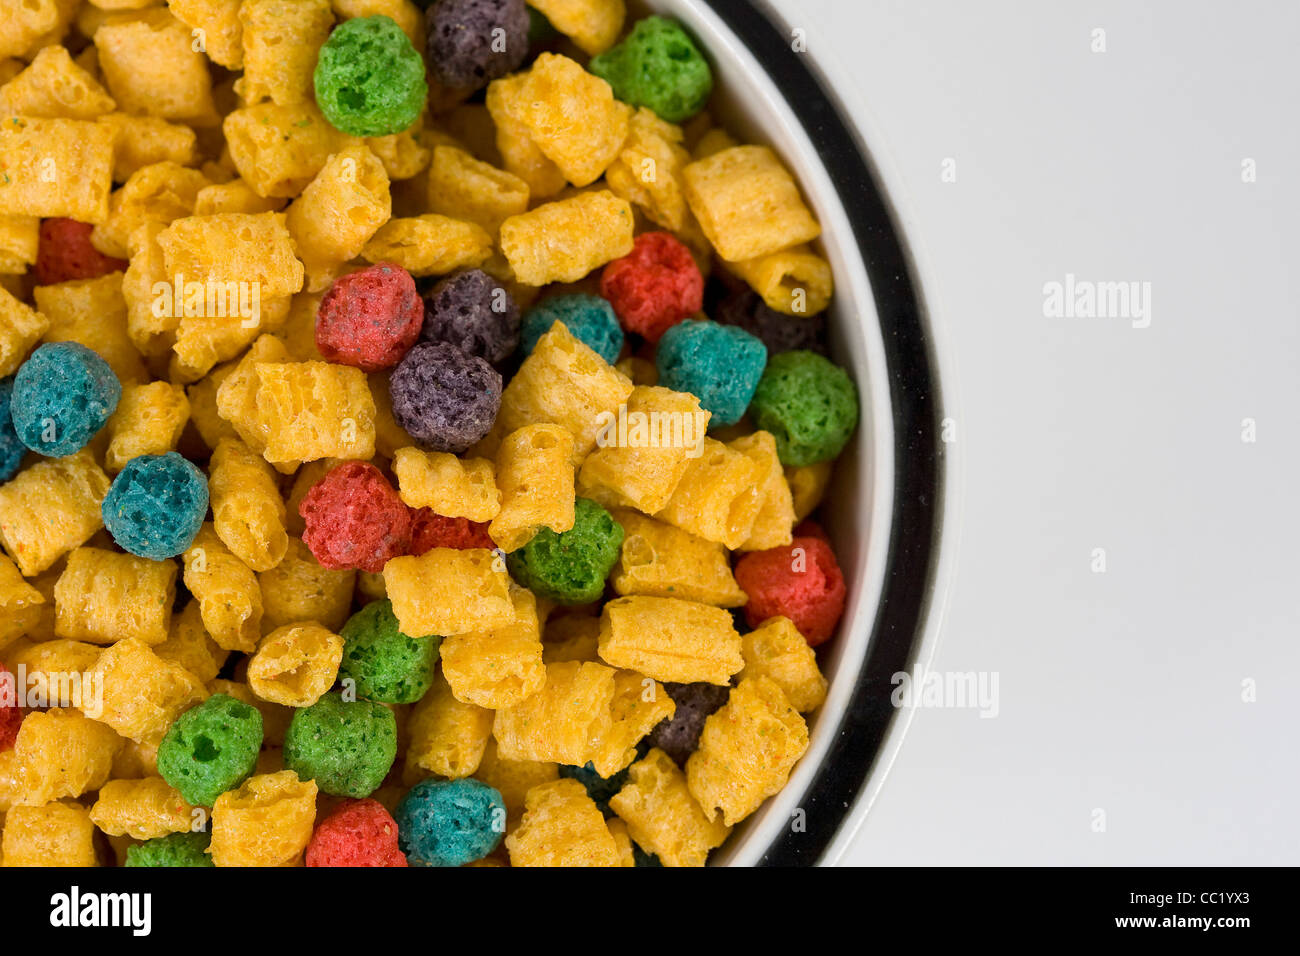 Cap'n Crunch's Crunch Berries breakfast cereal. Stock Photo